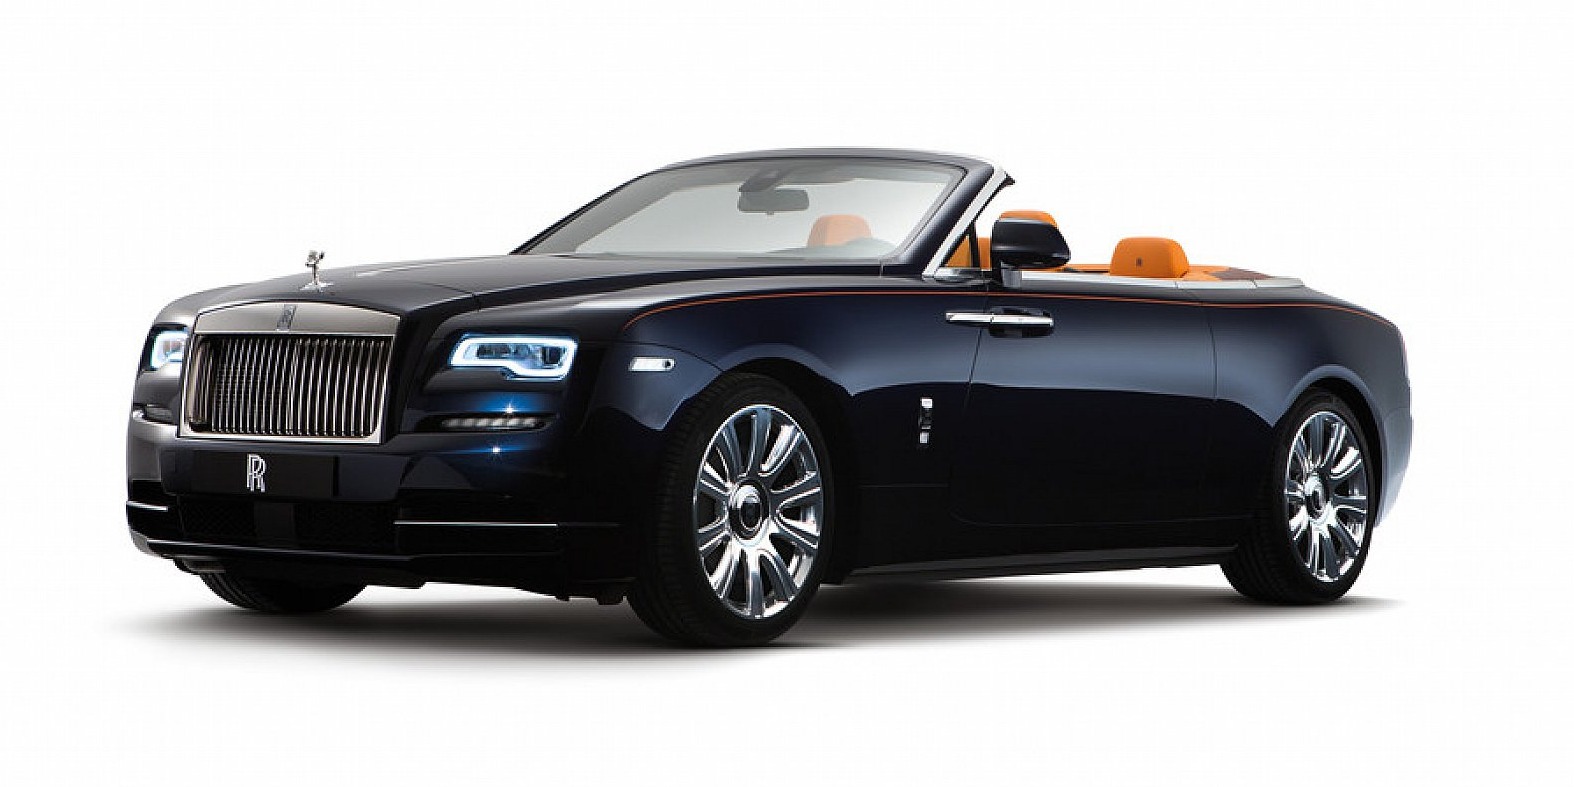 IAA 2015: Rolls-Royce Dawn - Luxus-Luftikus für vier